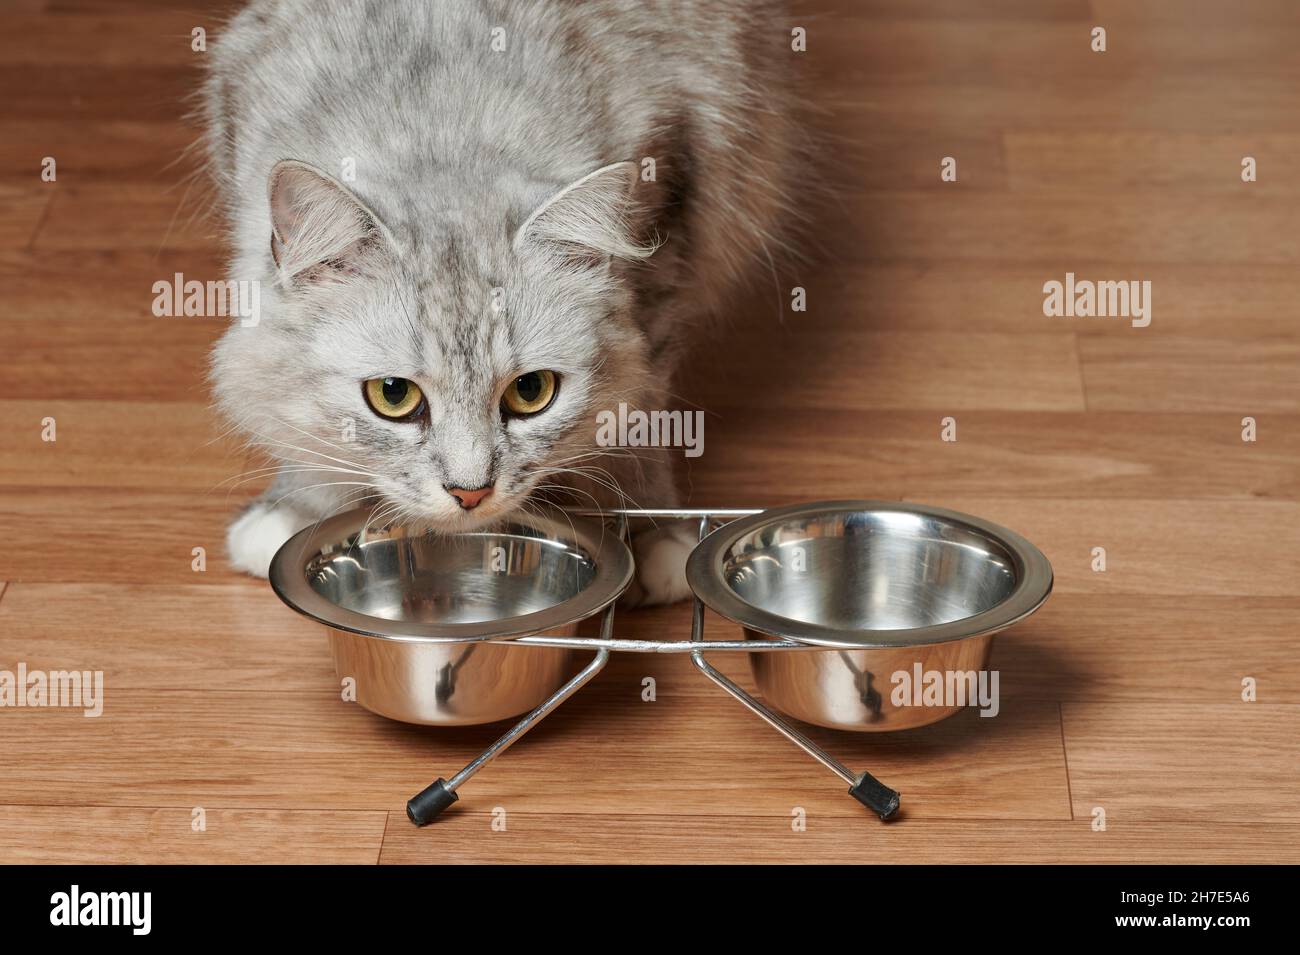 Les chats gris ont le repas des bols en métal sur le plancher en bois Banque D'Images